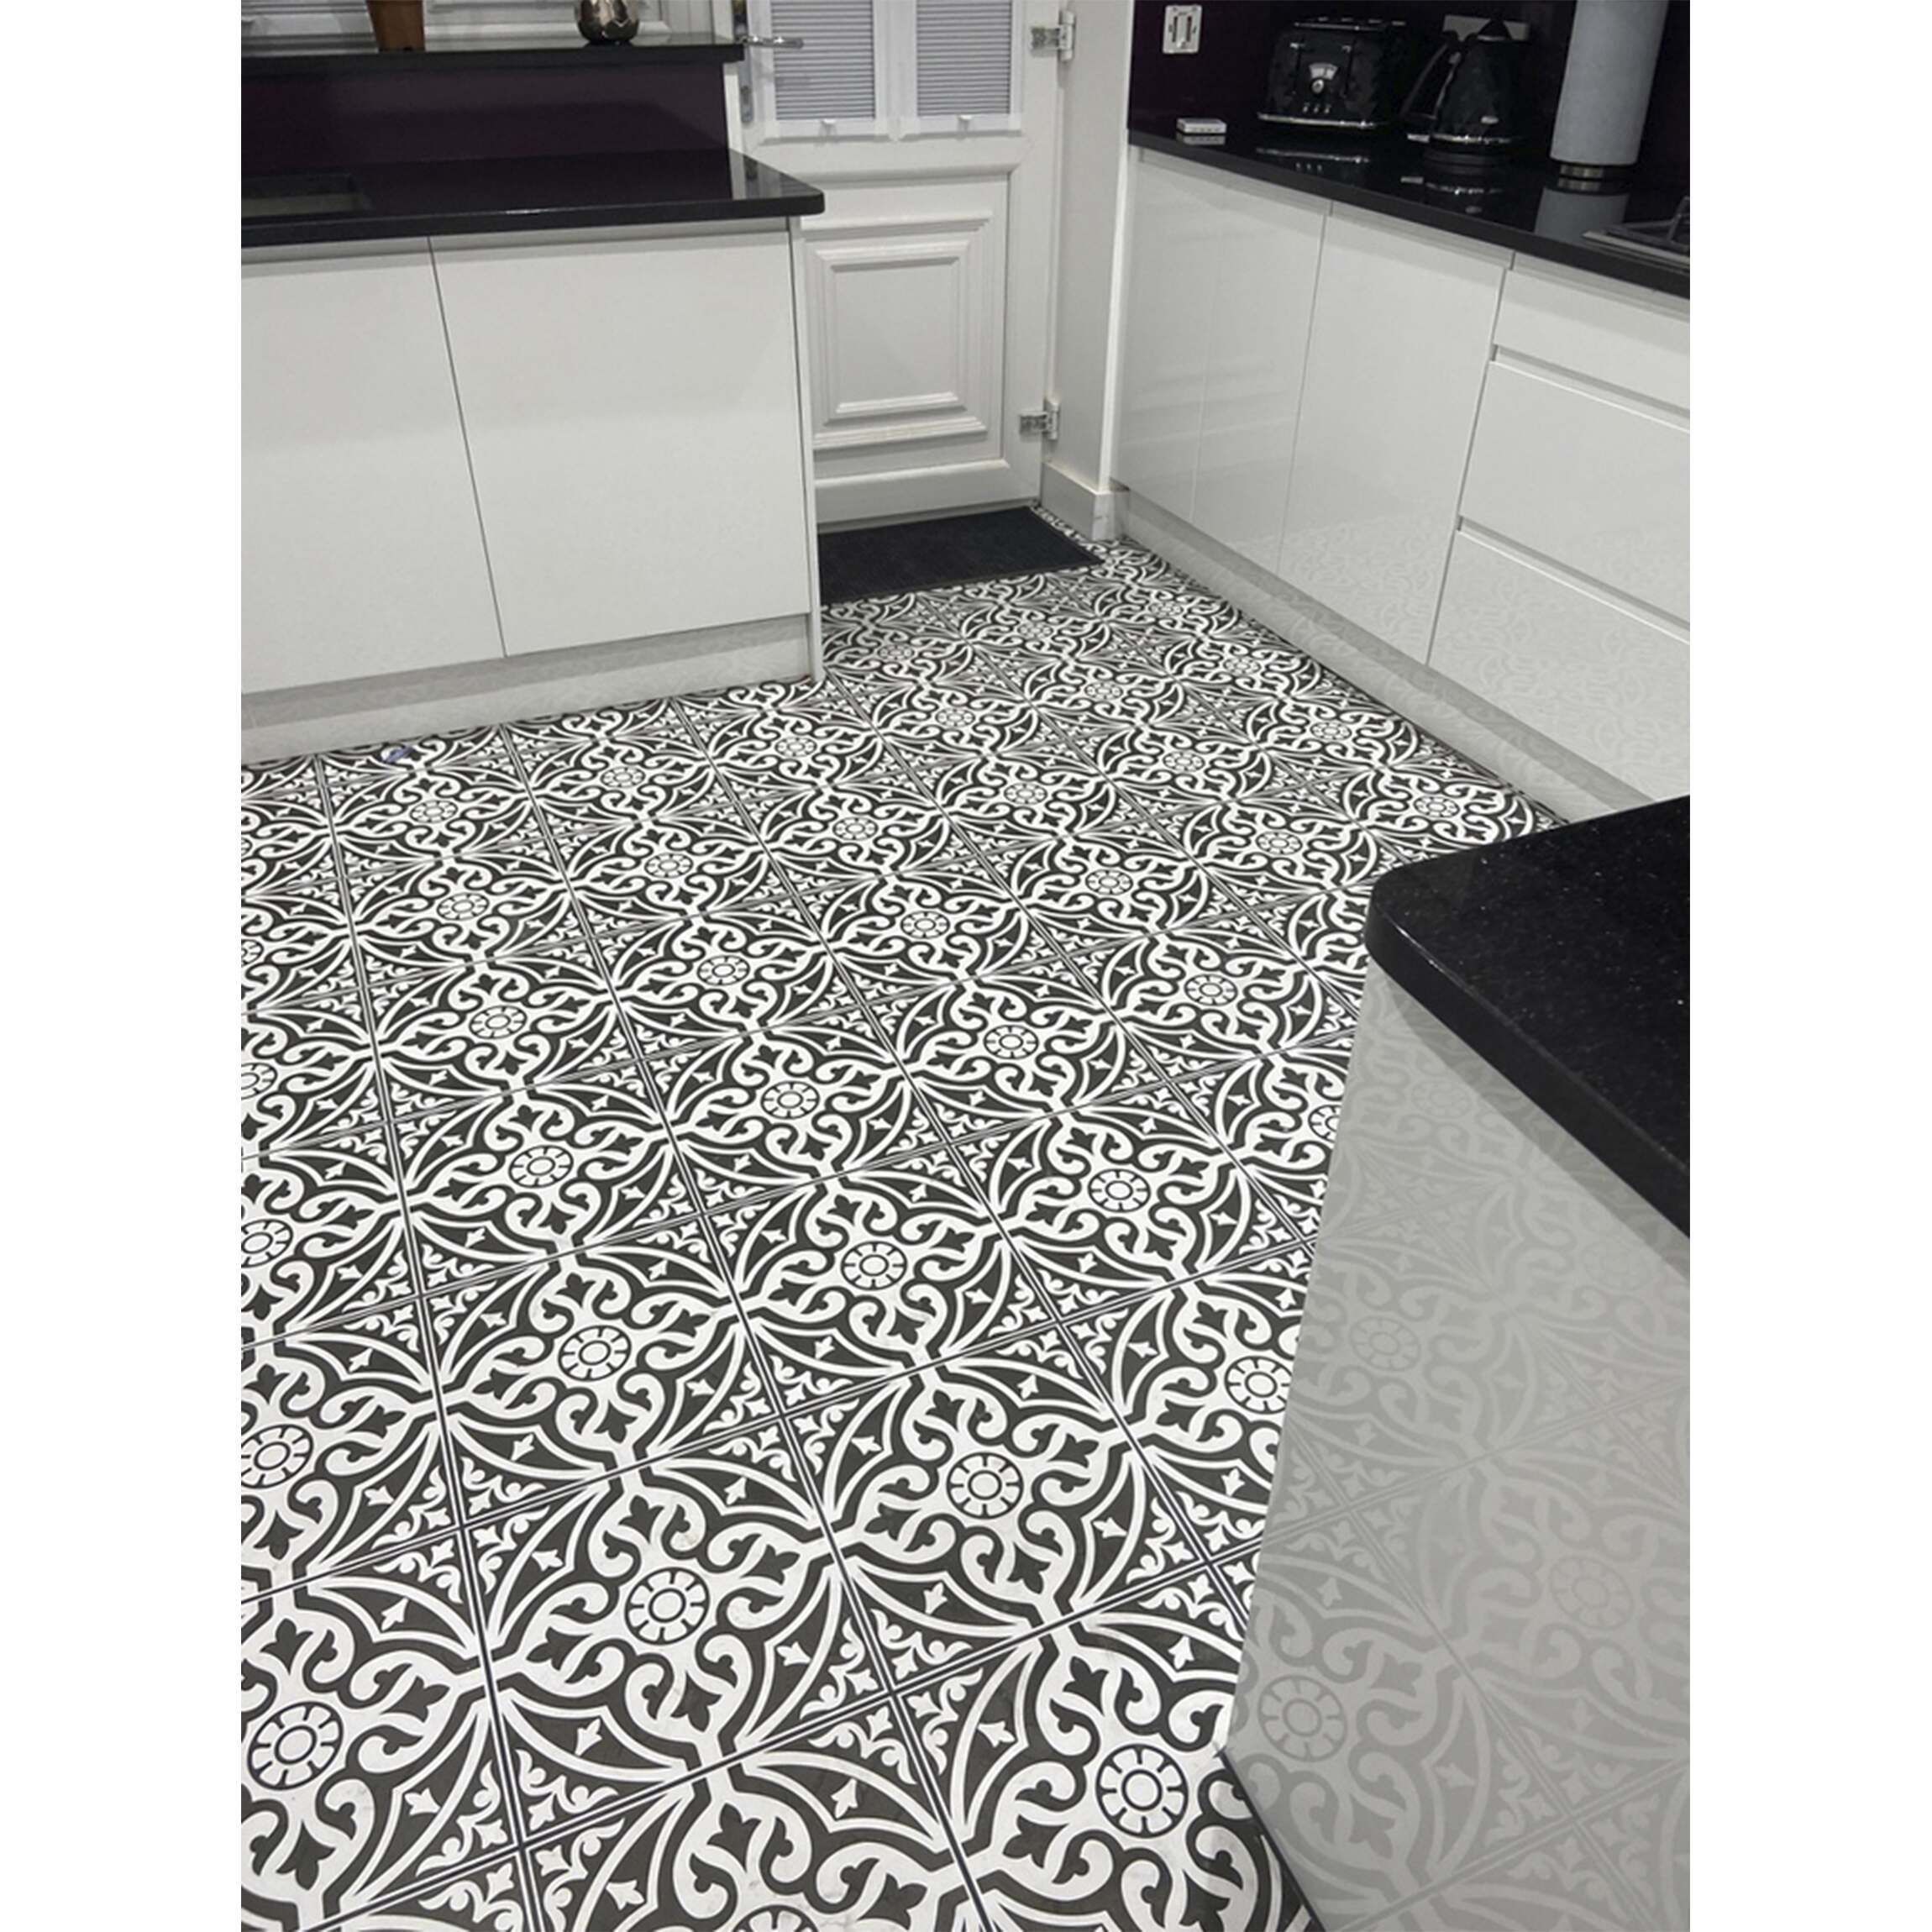 Floor Tile Tiles From Mountain, Black And White Kitchen Floor Tiles